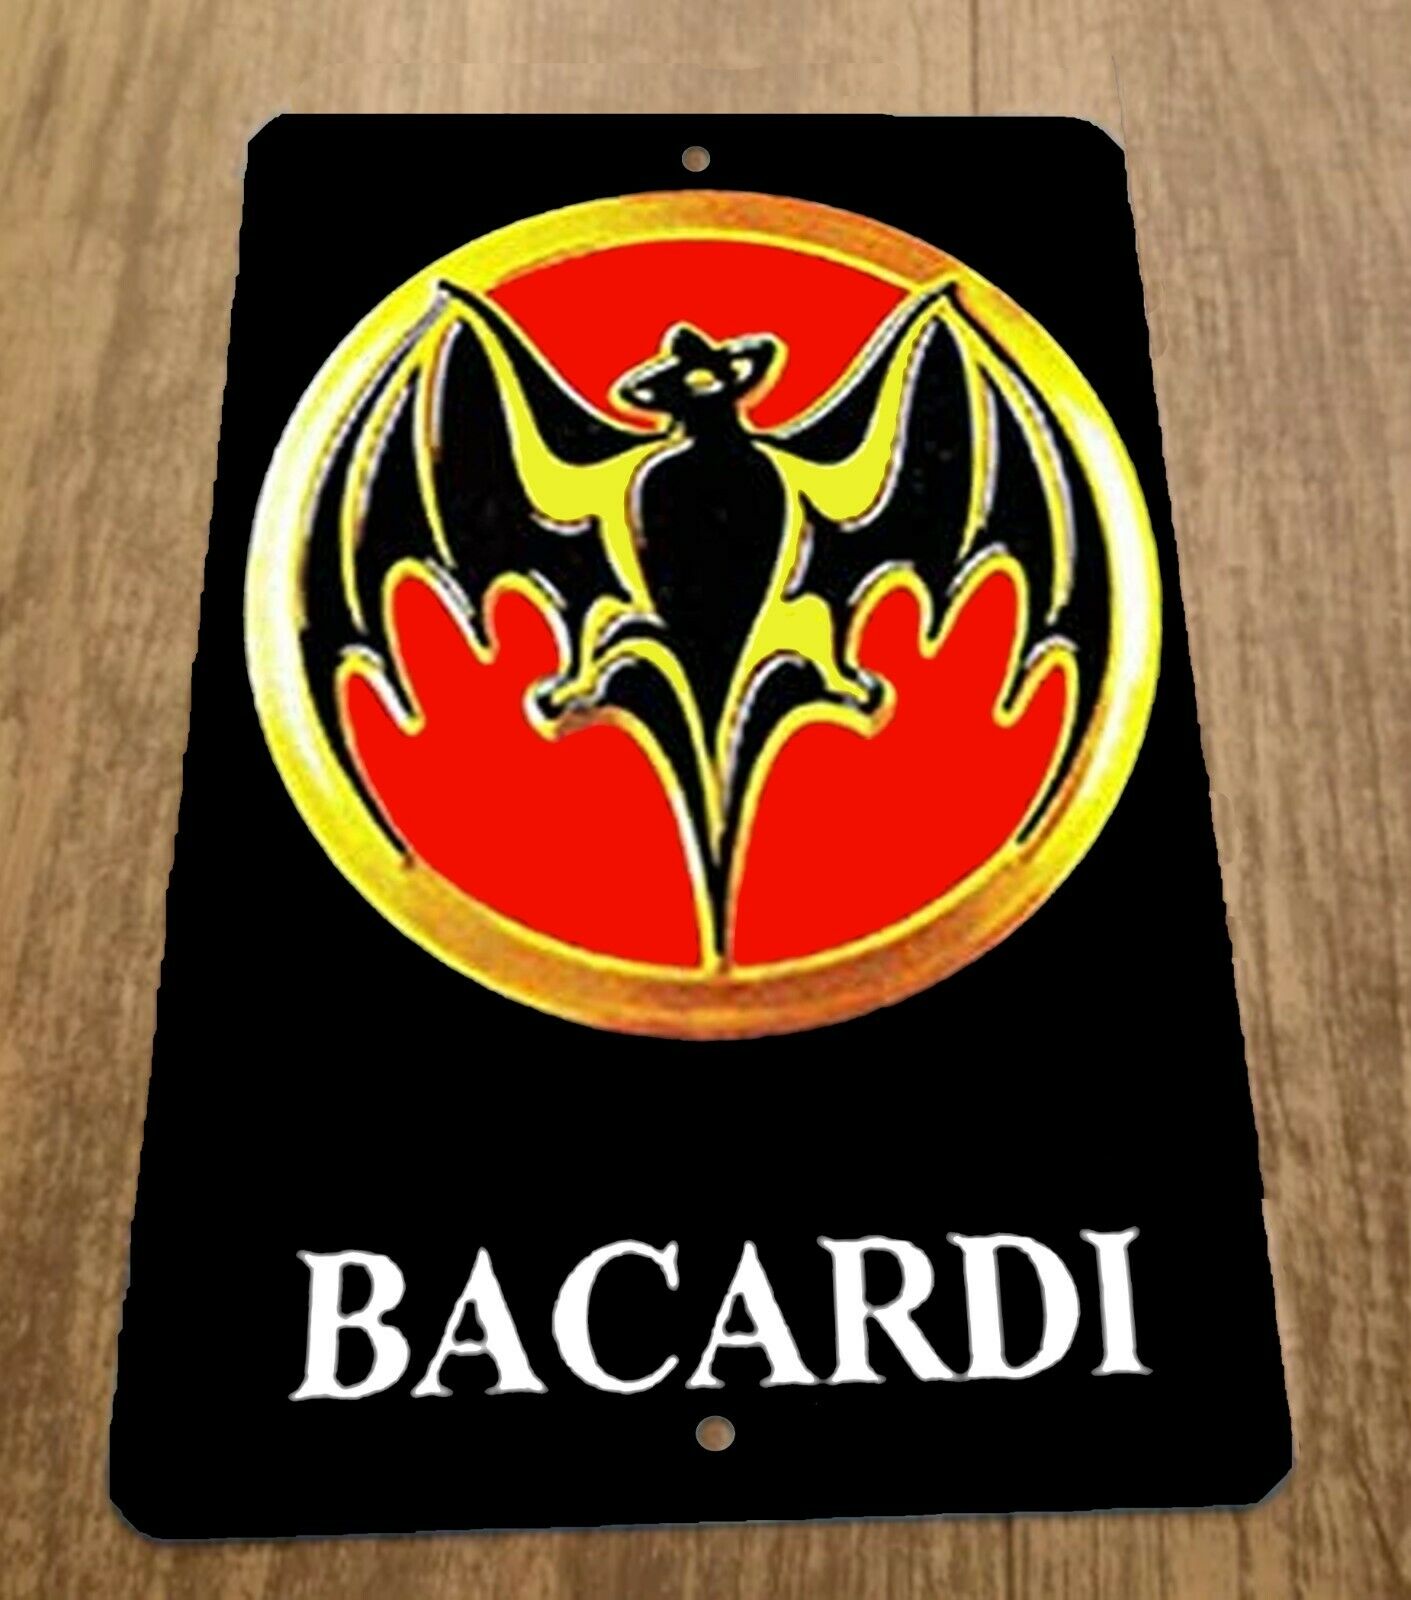 Bacardi Rum Logo Artwork 8x12 Metal Wall Bar Sign Alcohol Liquor